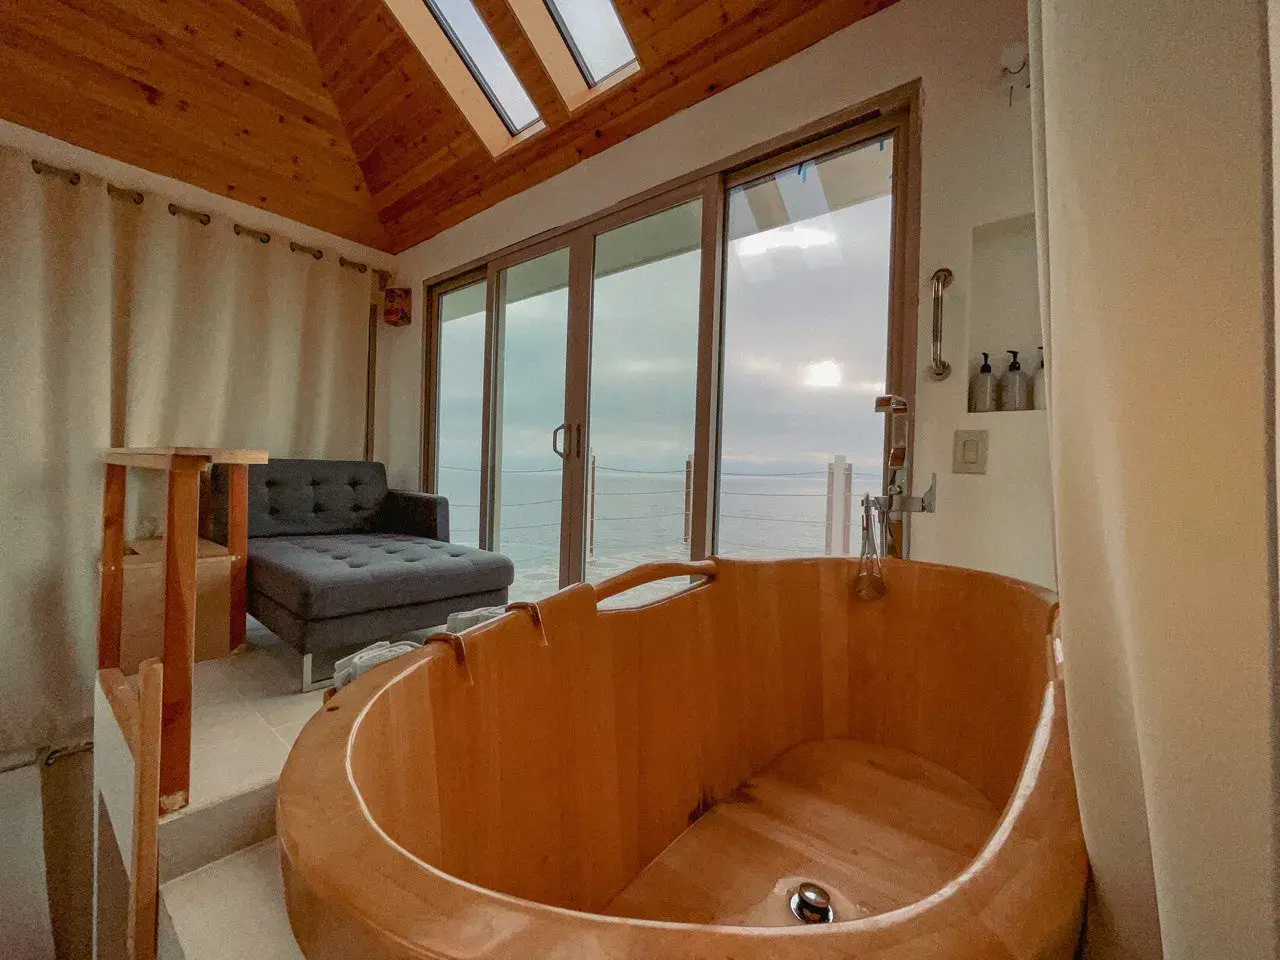 За панарамными окнами вид на океан, кресло и деревянная ванна для проведения процедур